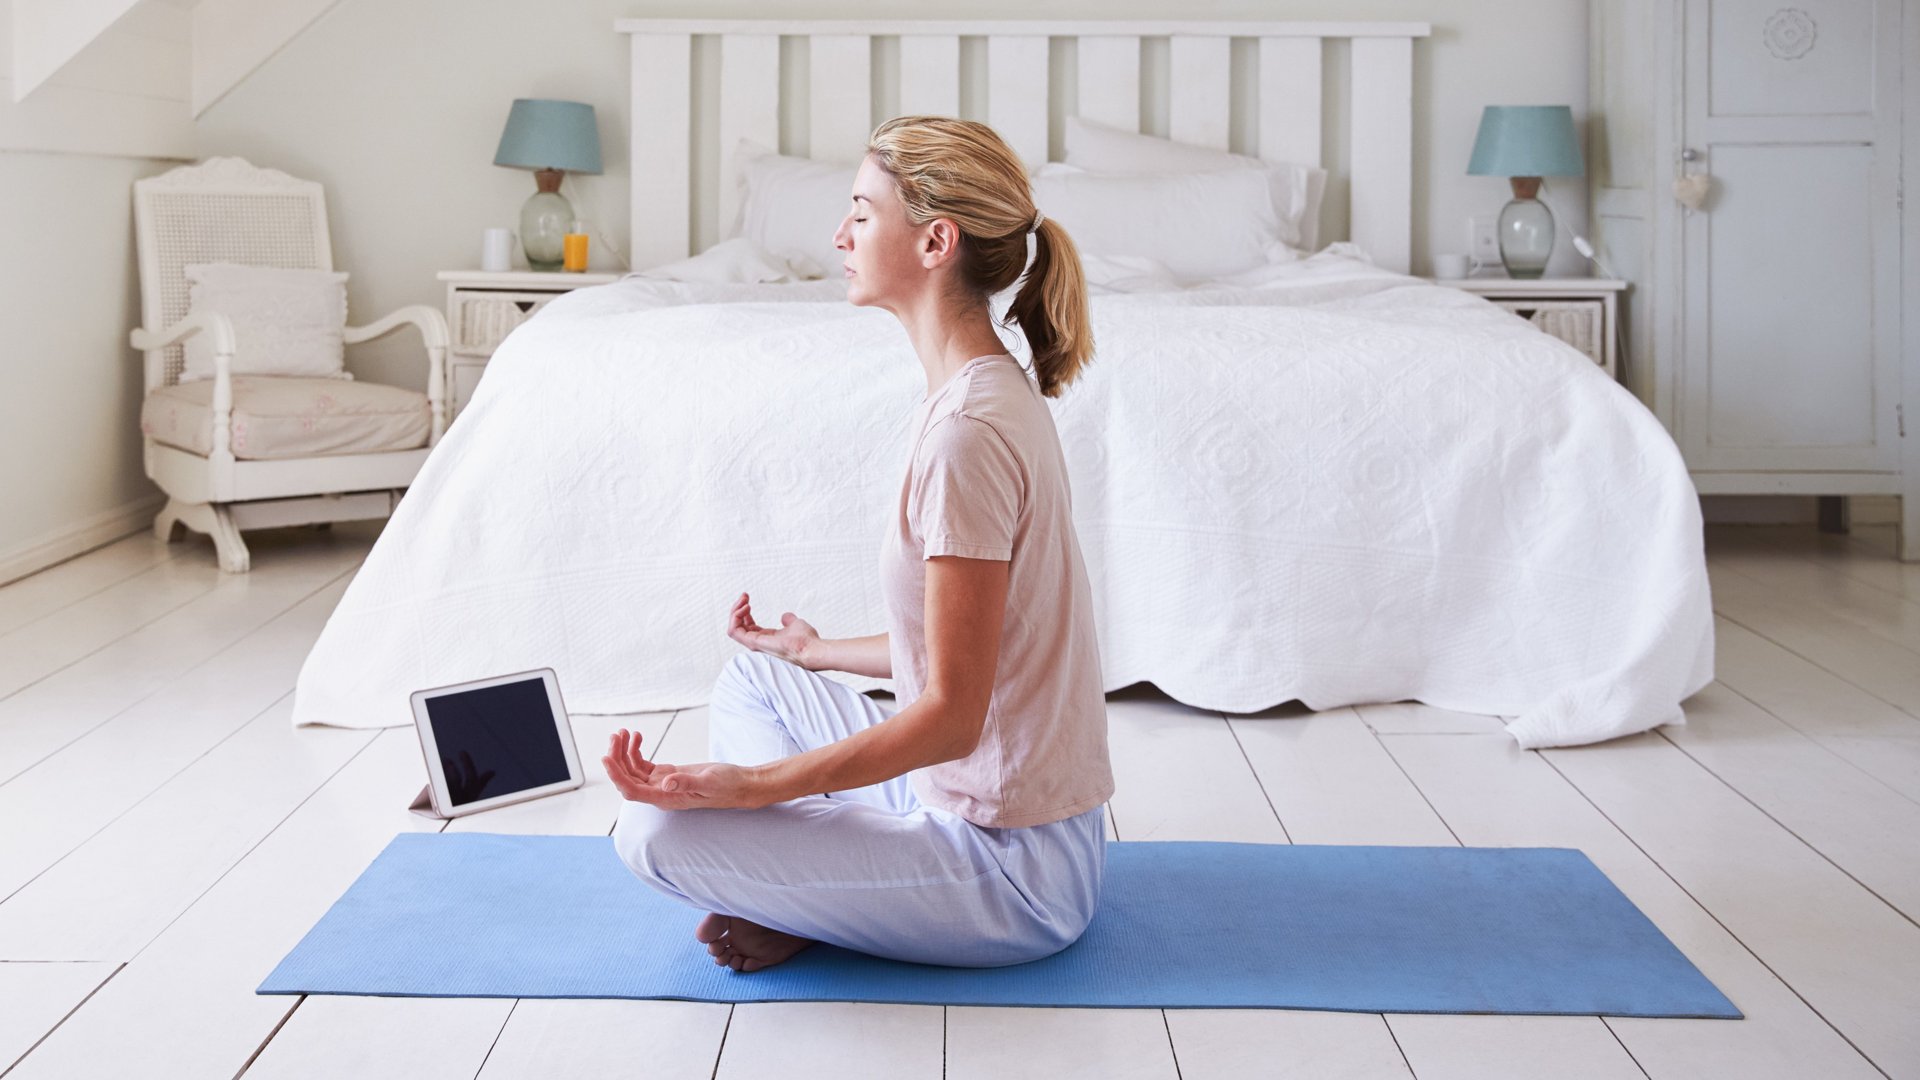 Kobieta korzysta z aplikacji do medytacji, siedząc na niebieskiej macie do jogi przed białym łóżkiem